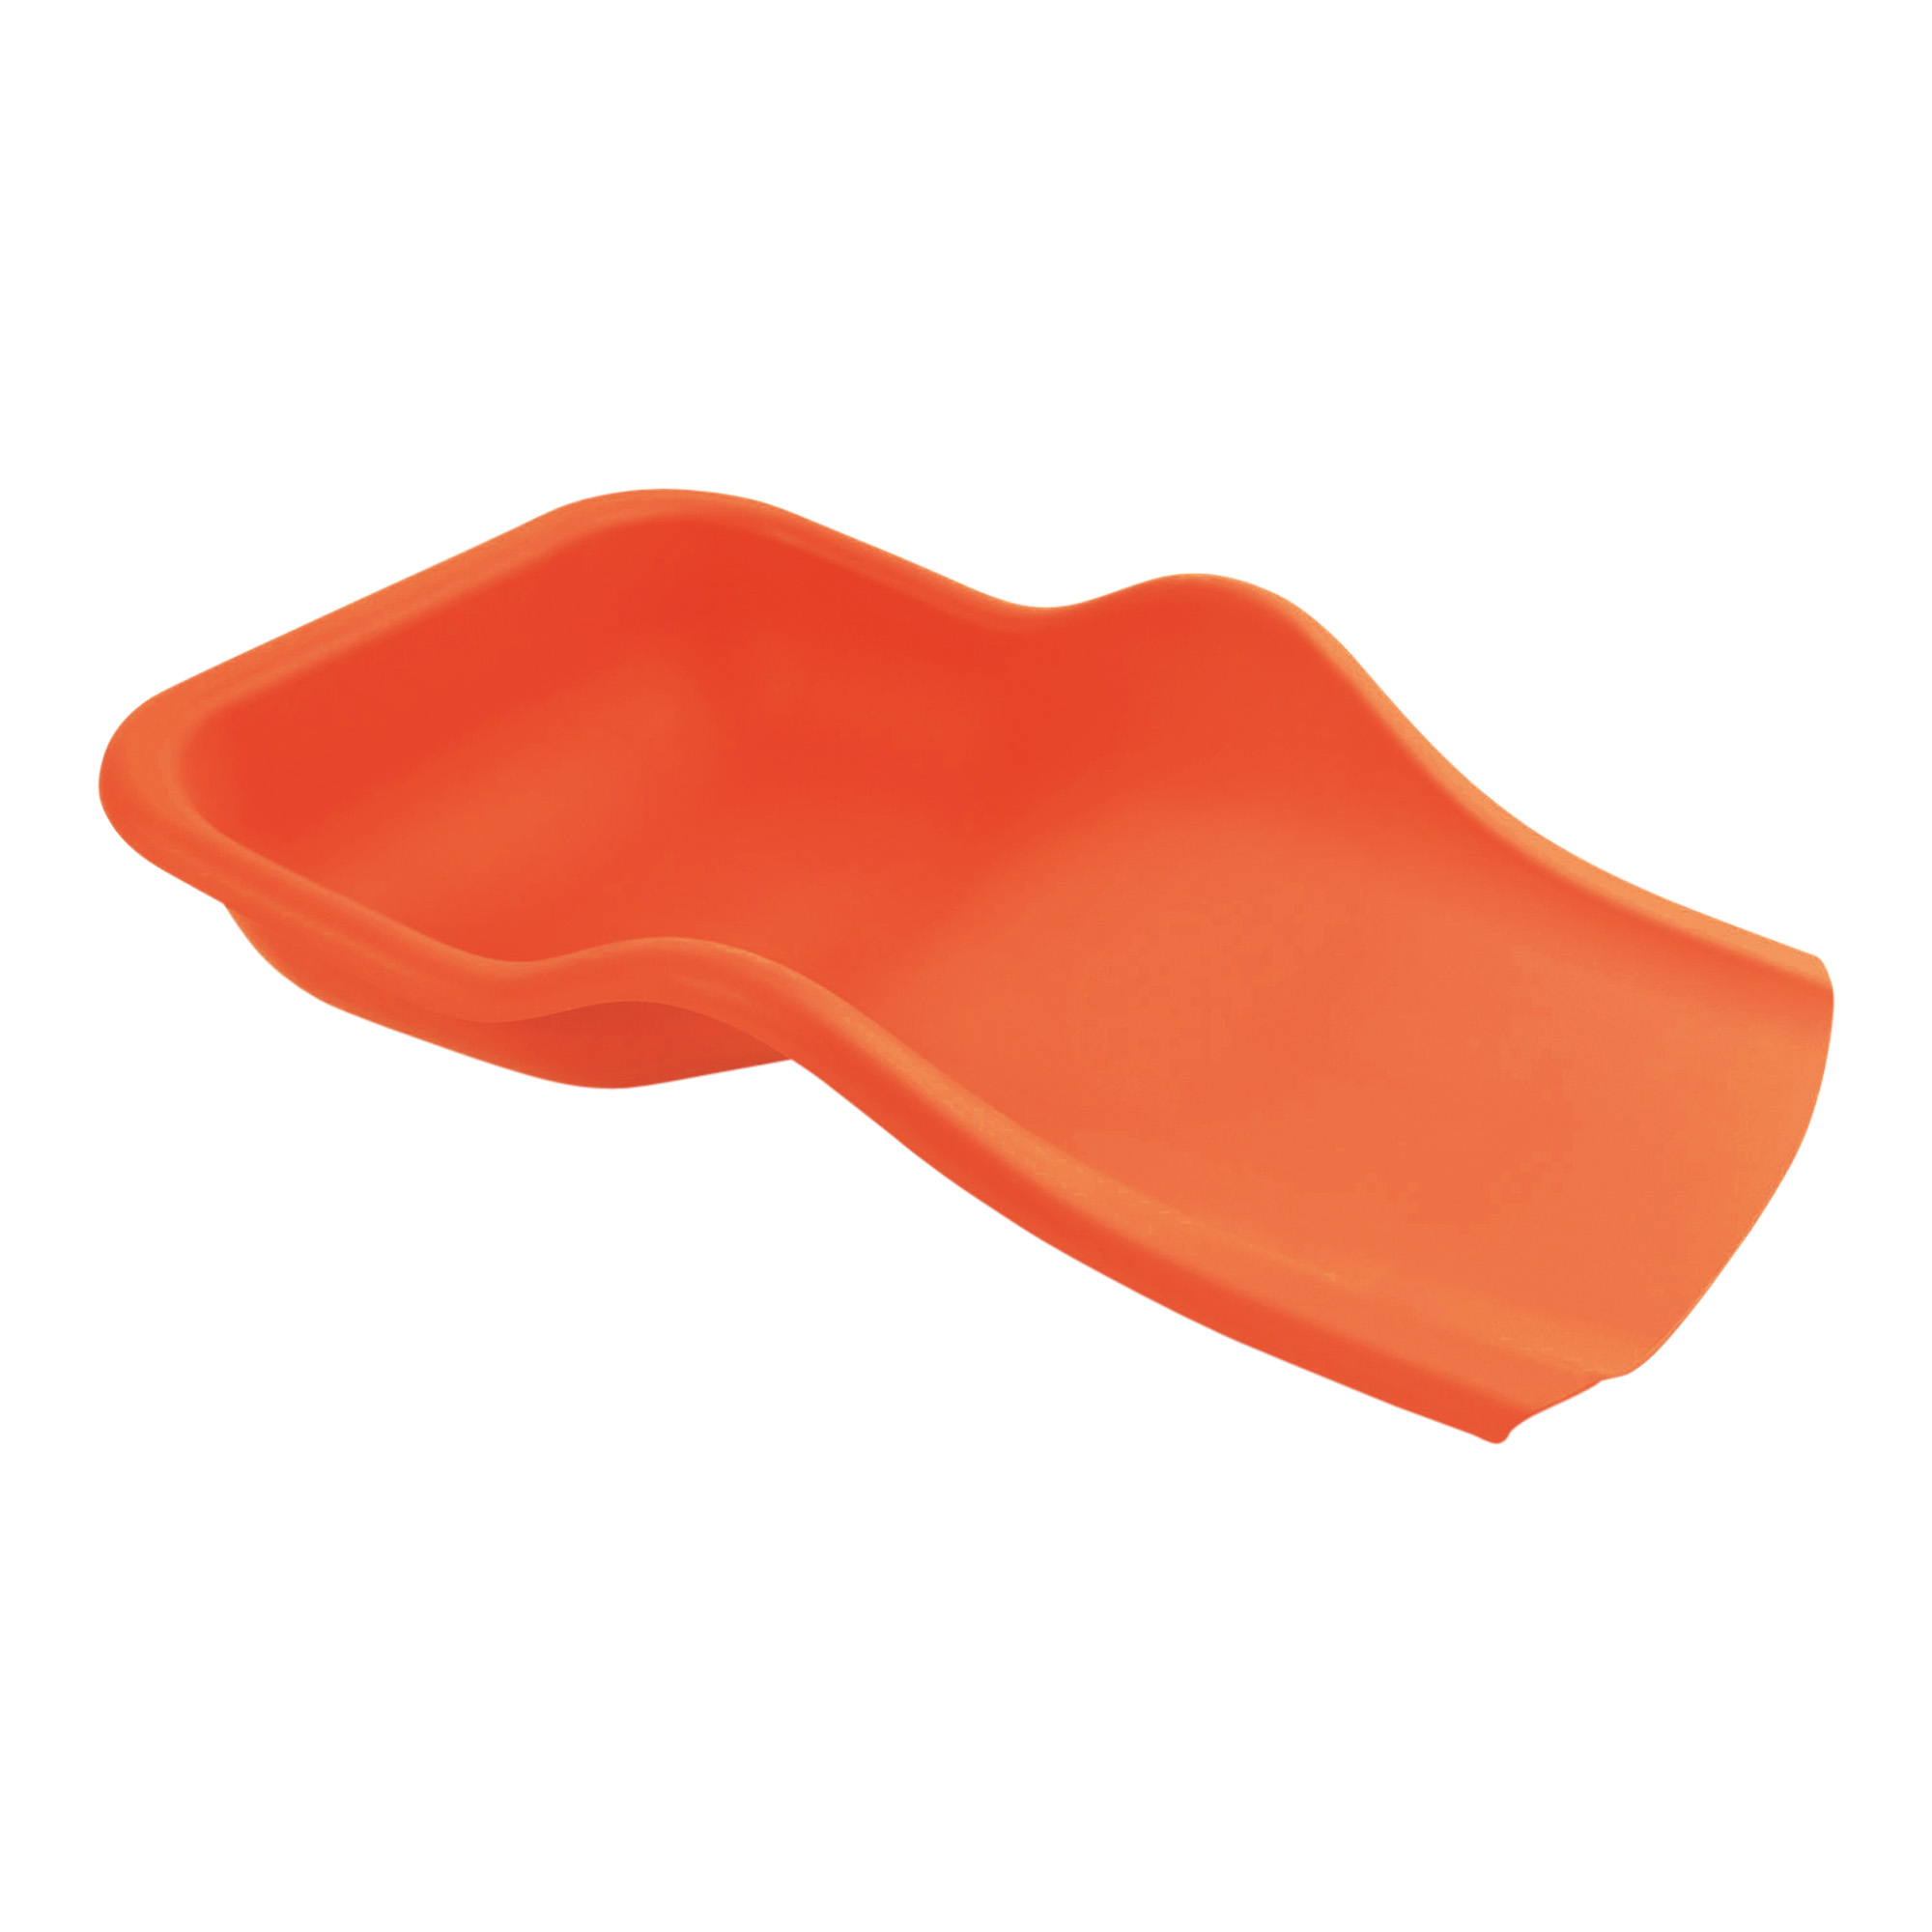 Augette de récuperation flexible pour la collecte des résidus de pédicure orange